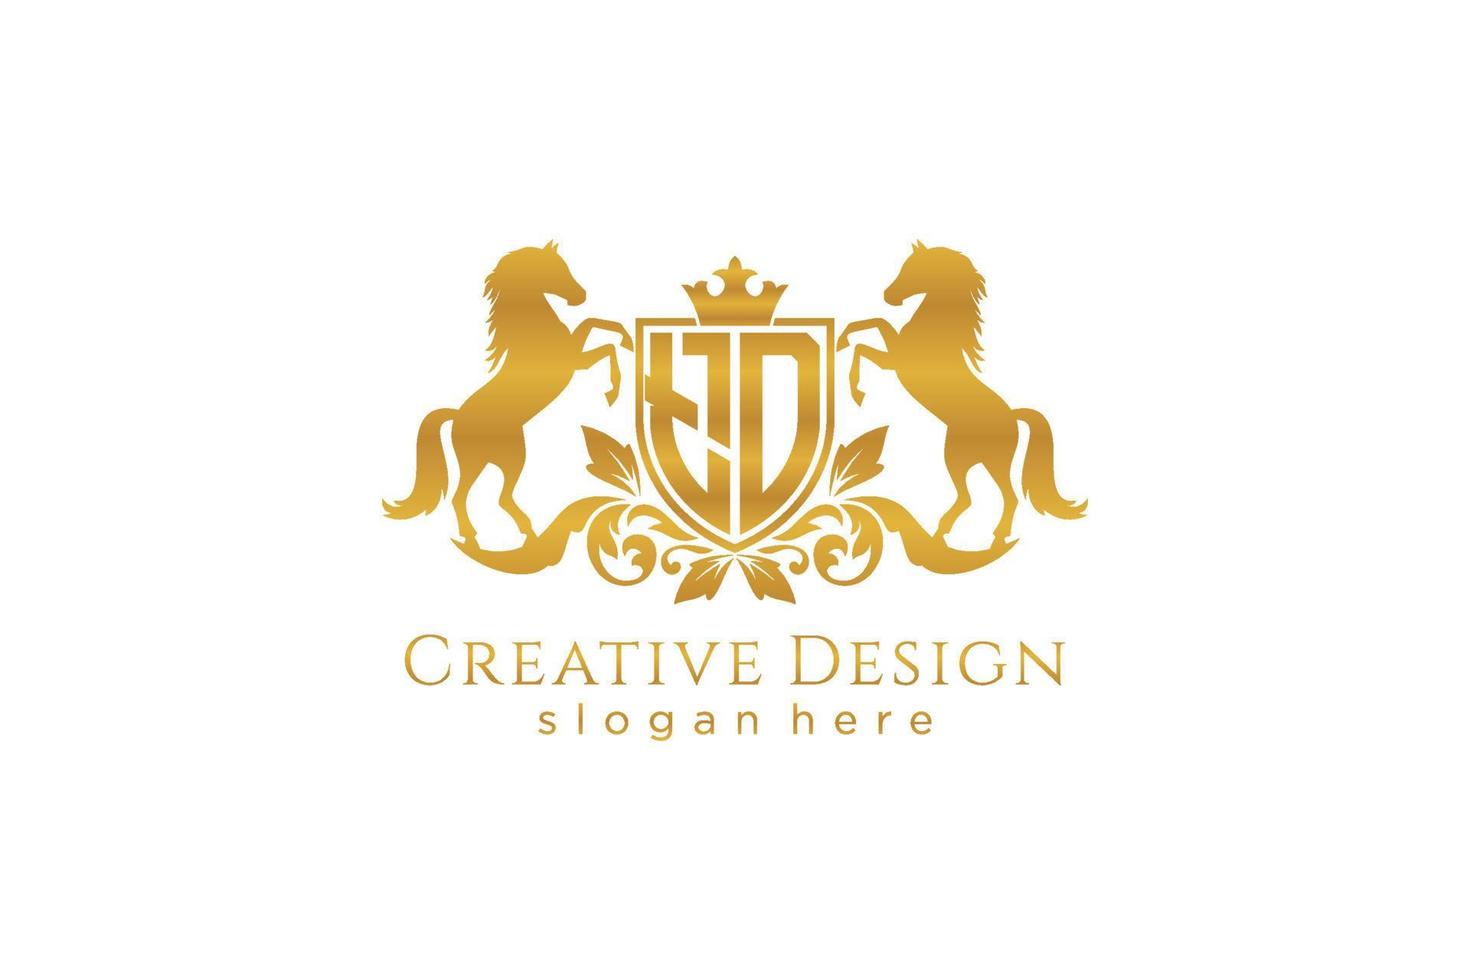 crista dourada retro td inicial com escudo e dois cavalos, modelo de crachá com pergaminhos e coroa real - perfeito para projetos de marca luxuosos vetor